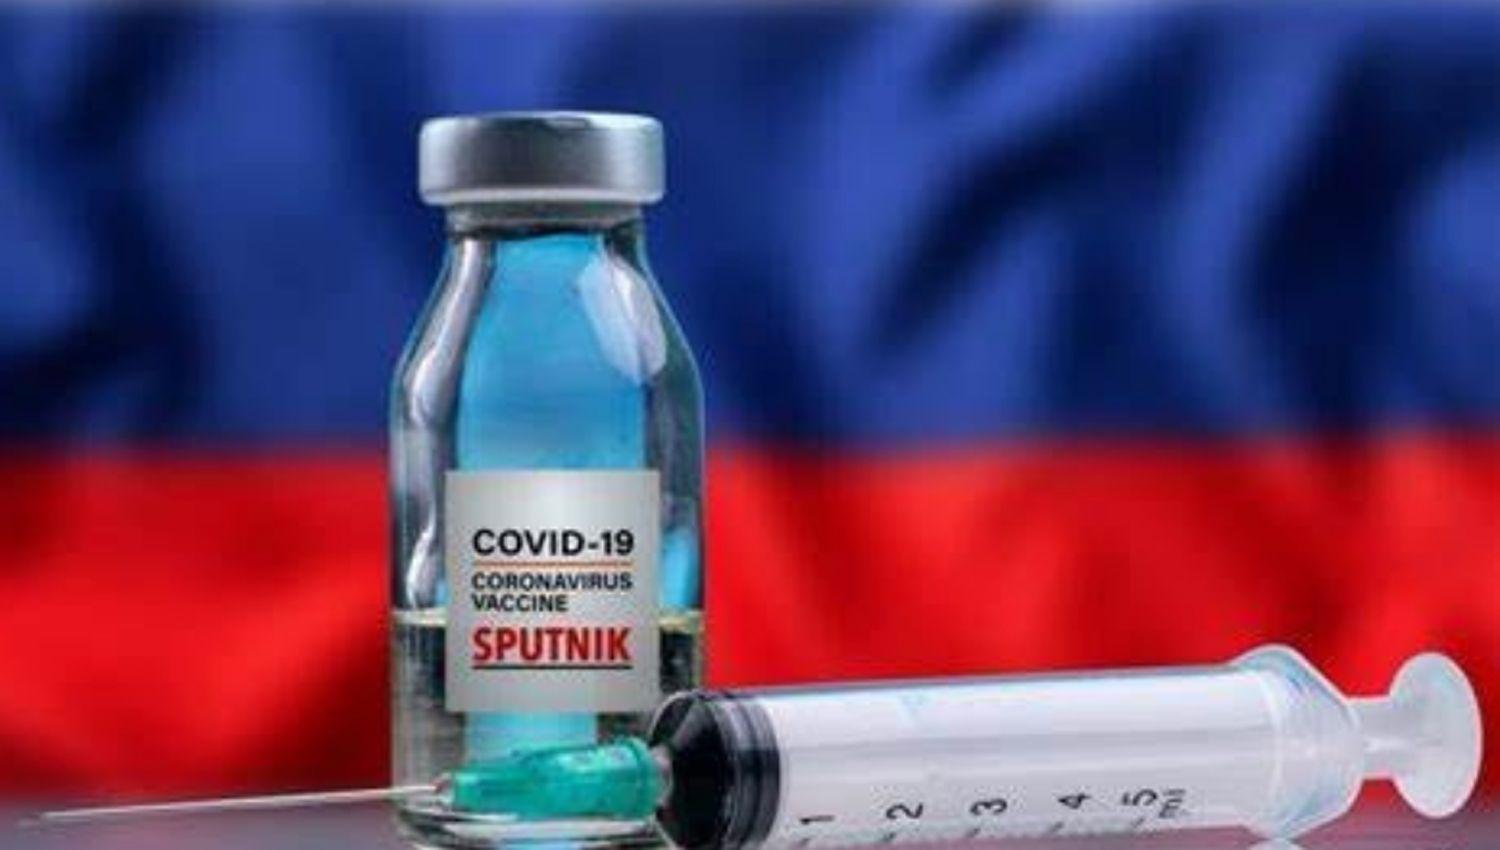 Los fabricantes de la vacuna rusa aseguran que el precio seraacute ldquoel maacutes bajordquo del mercado